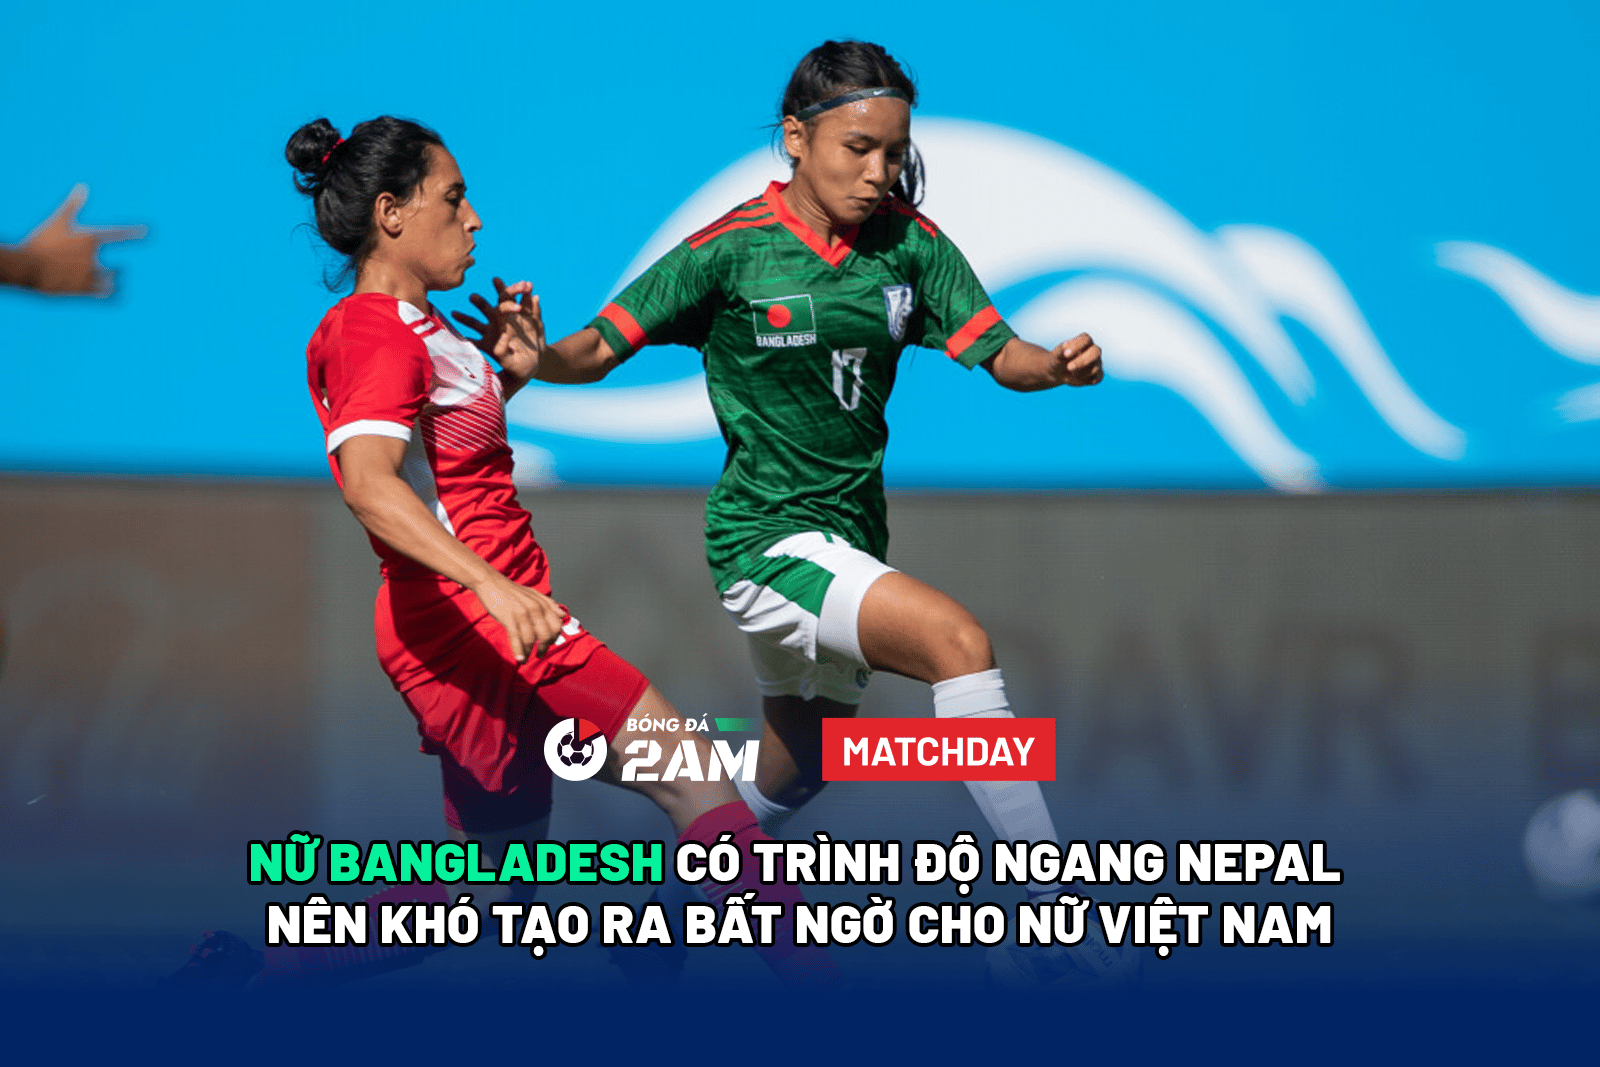 Nữ Bangladesh có trình độ ngang Nepal nên khó tạo ra bất ngờ cho nữ Việt Nam. 